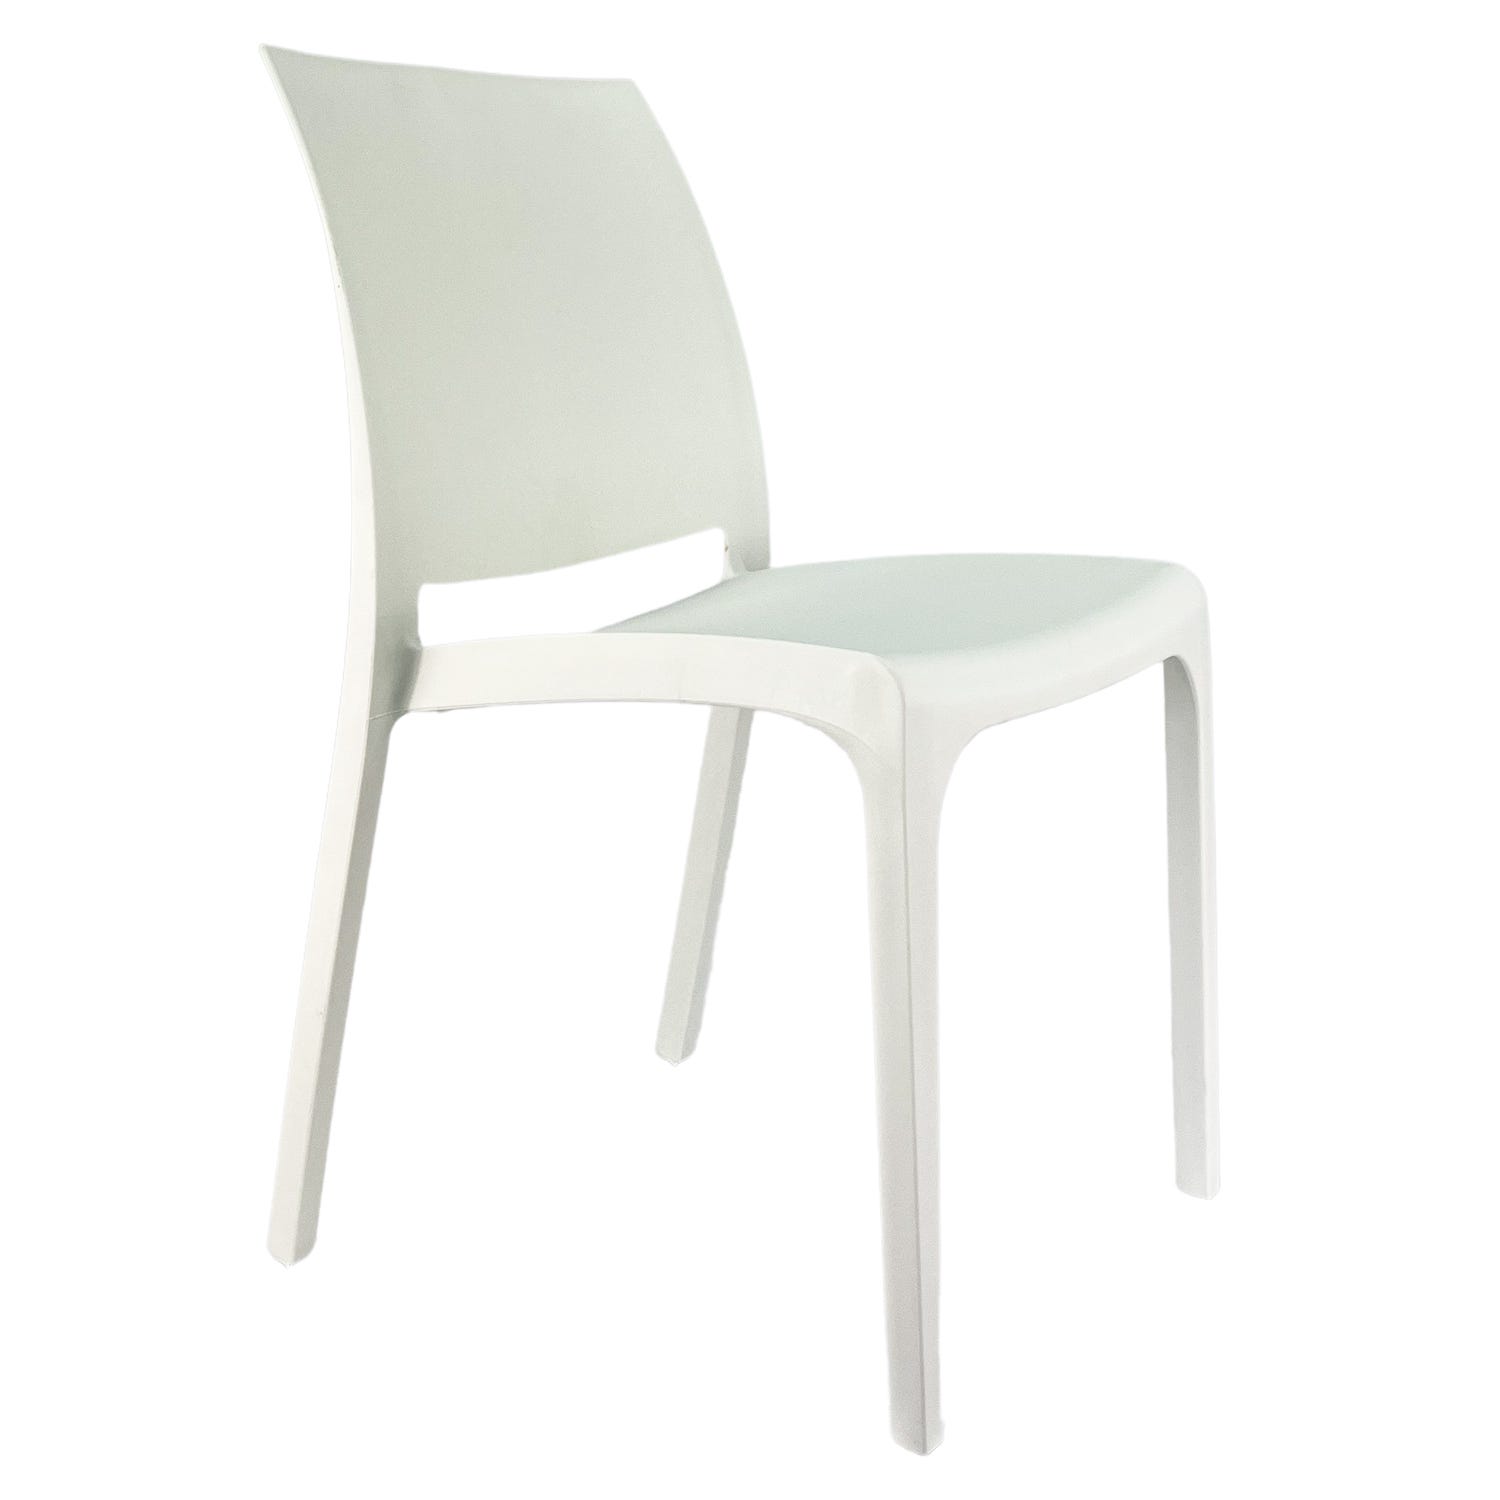 sedie bianche,sedie cucina,sedie moderne,sedia cucina,sedia bianca,sedie  design